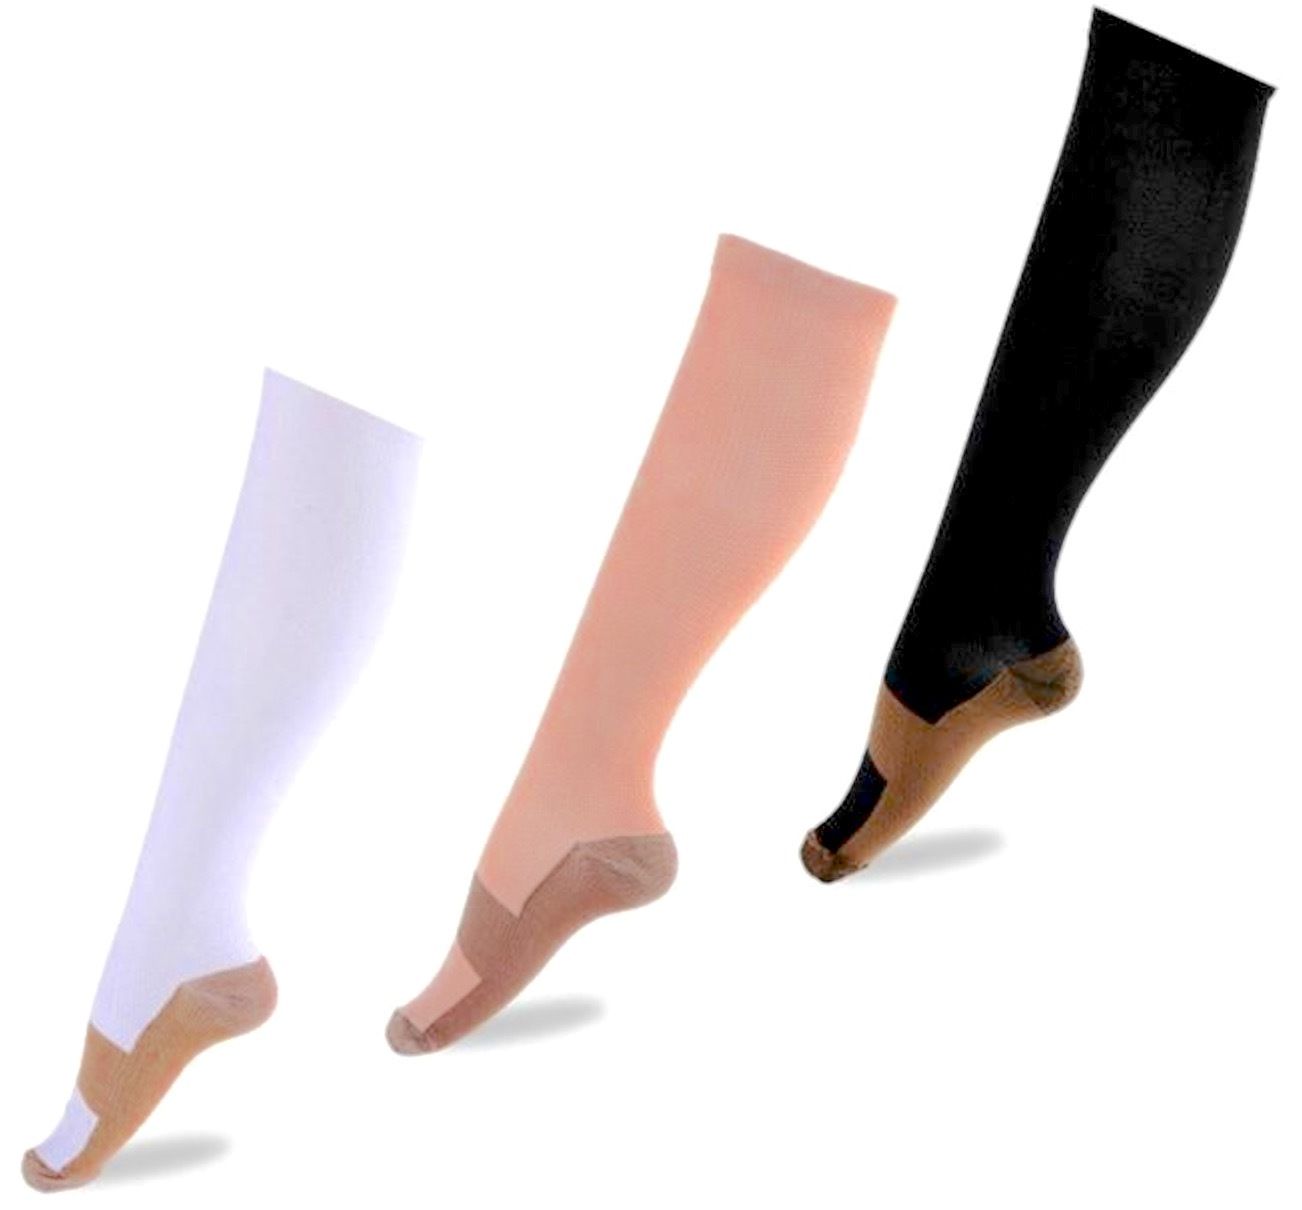 Unbranded Compression Socks/Hose Medical Compression Garments for sale